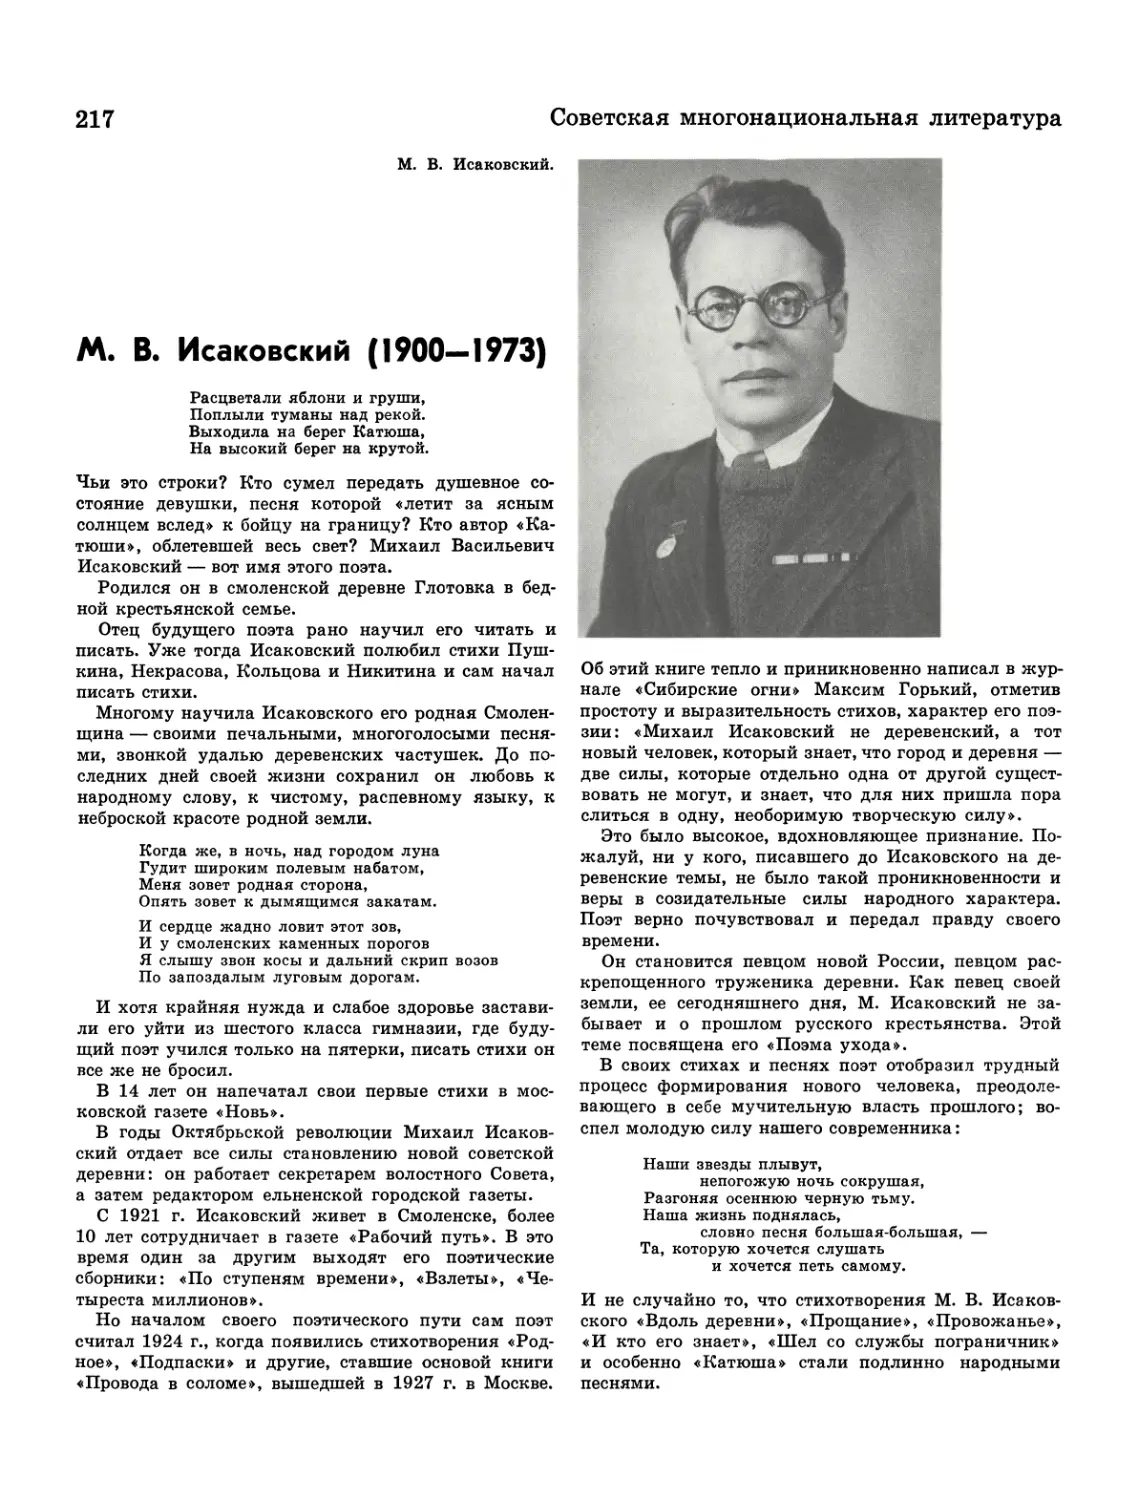 М. В. Исаковский